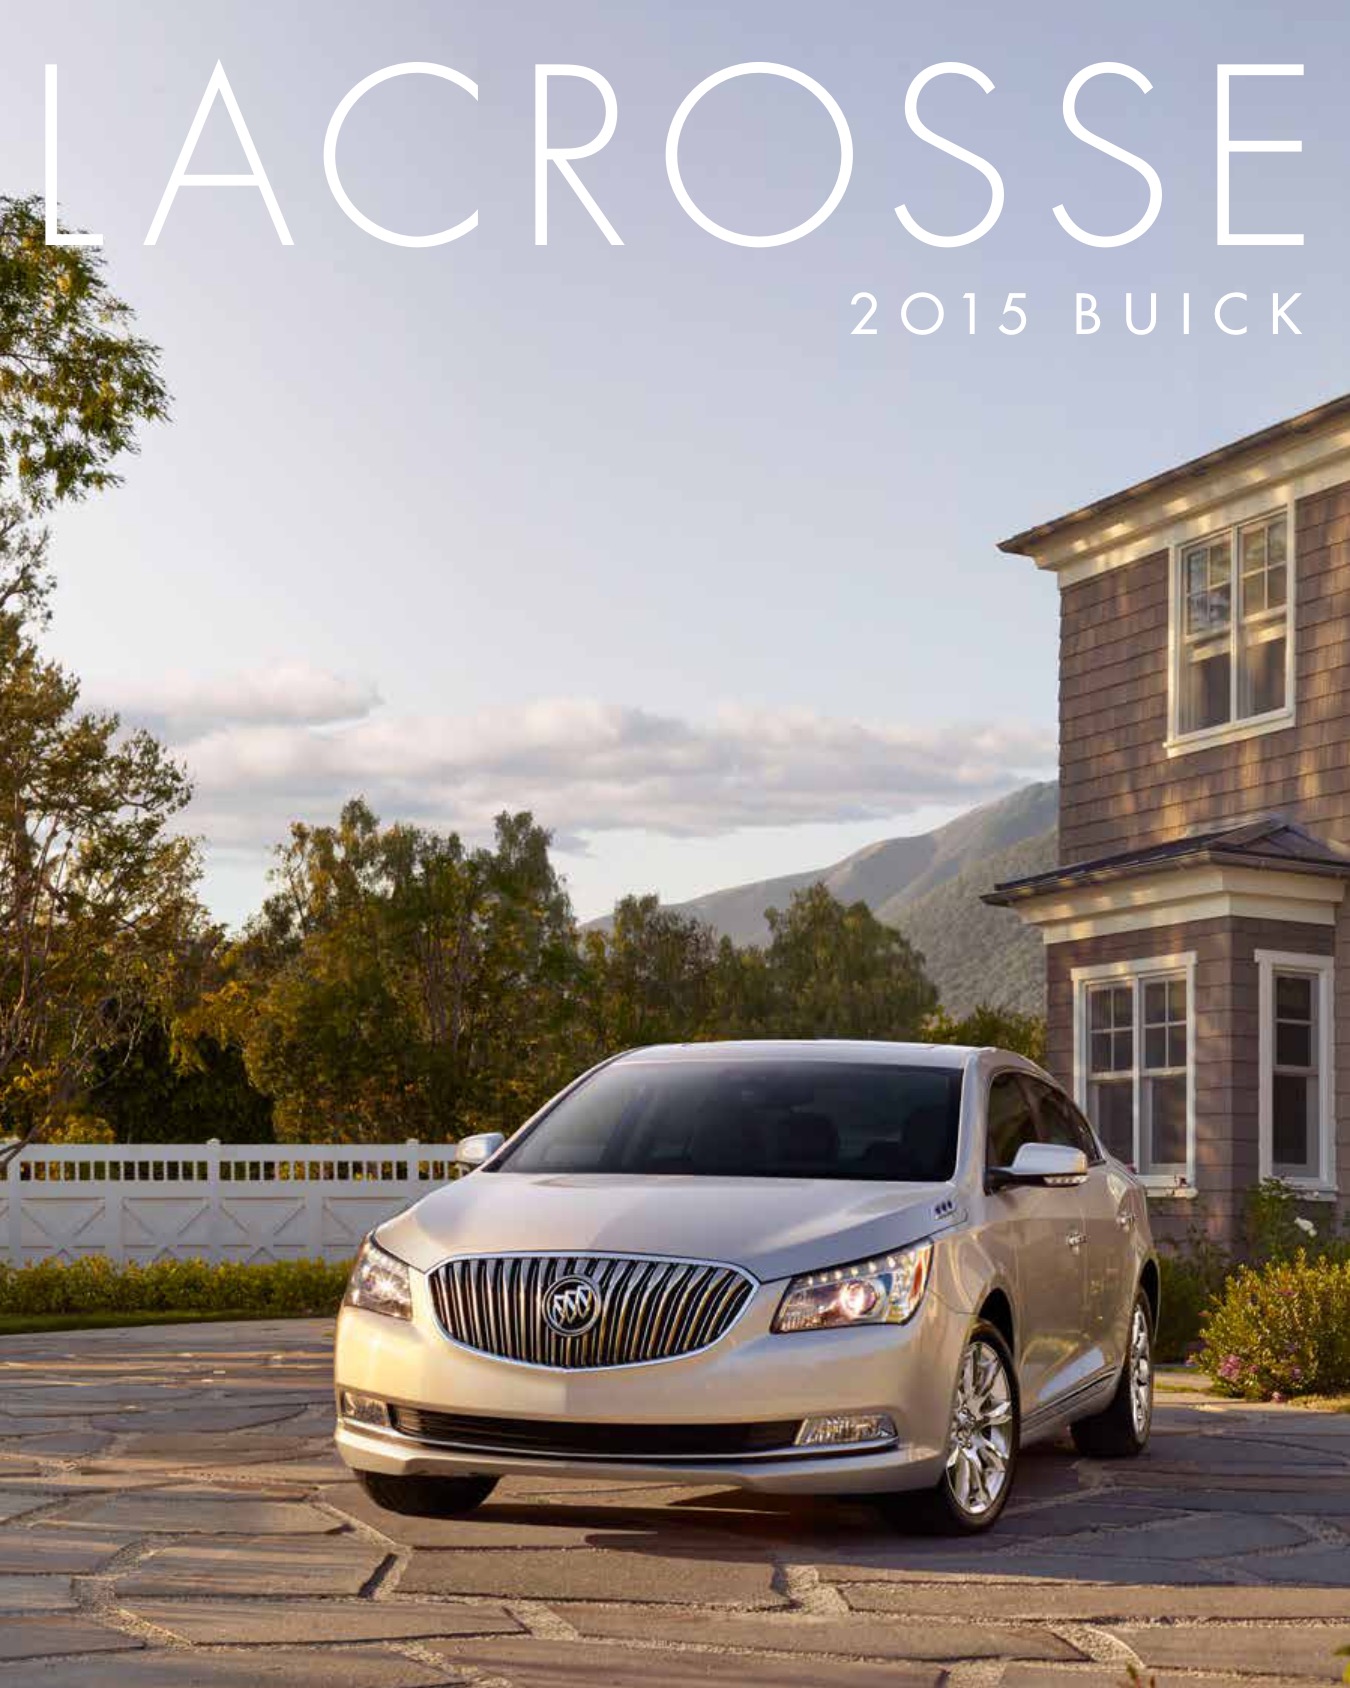 2015 Buick LaCrosse Brochure